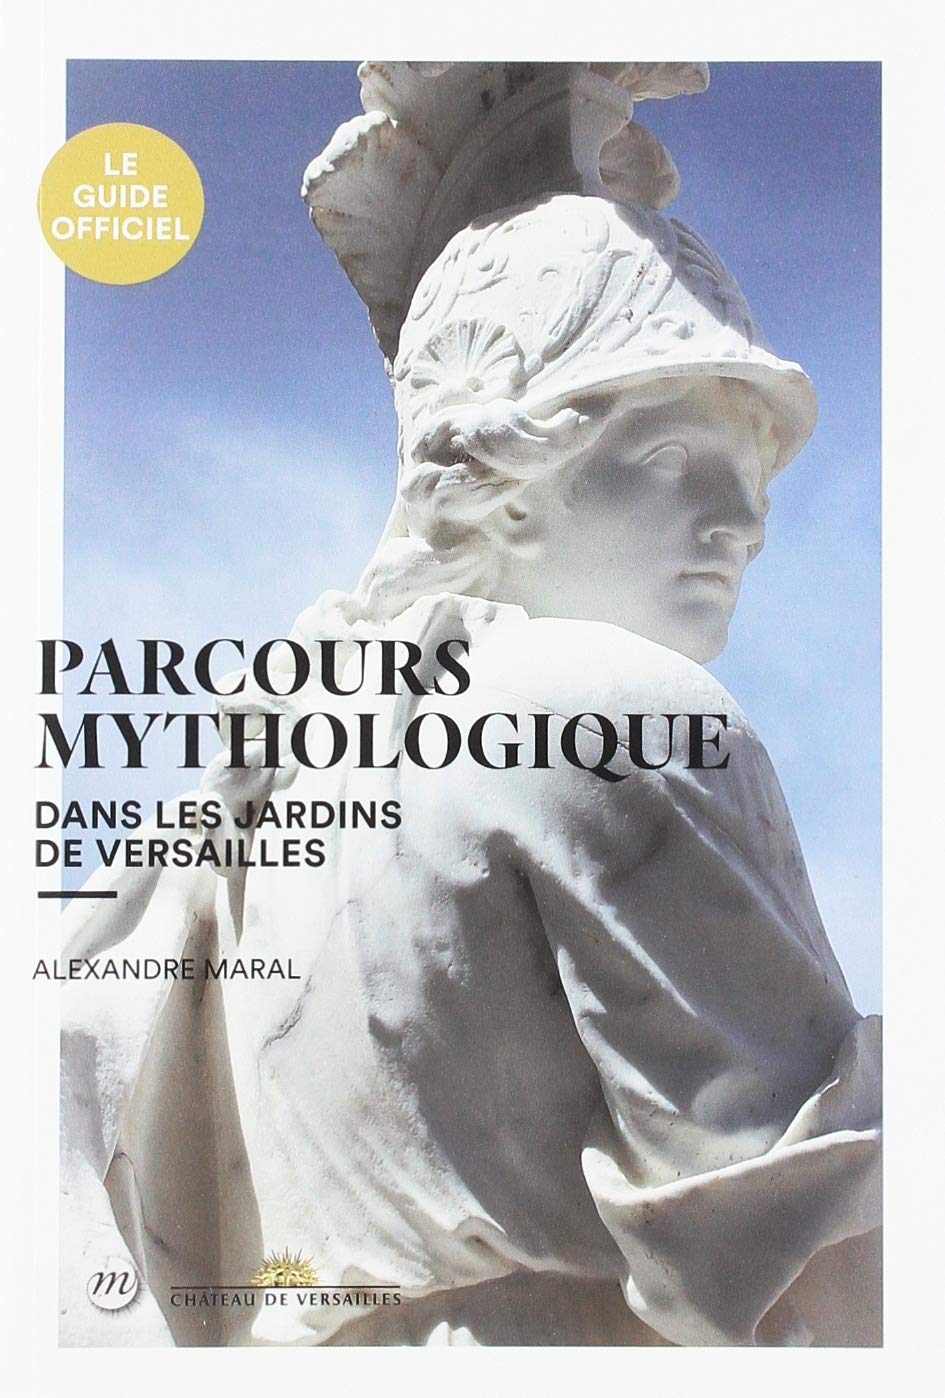 Parcours mythologique dans les jardins de Versailles, 2019, 176 p.